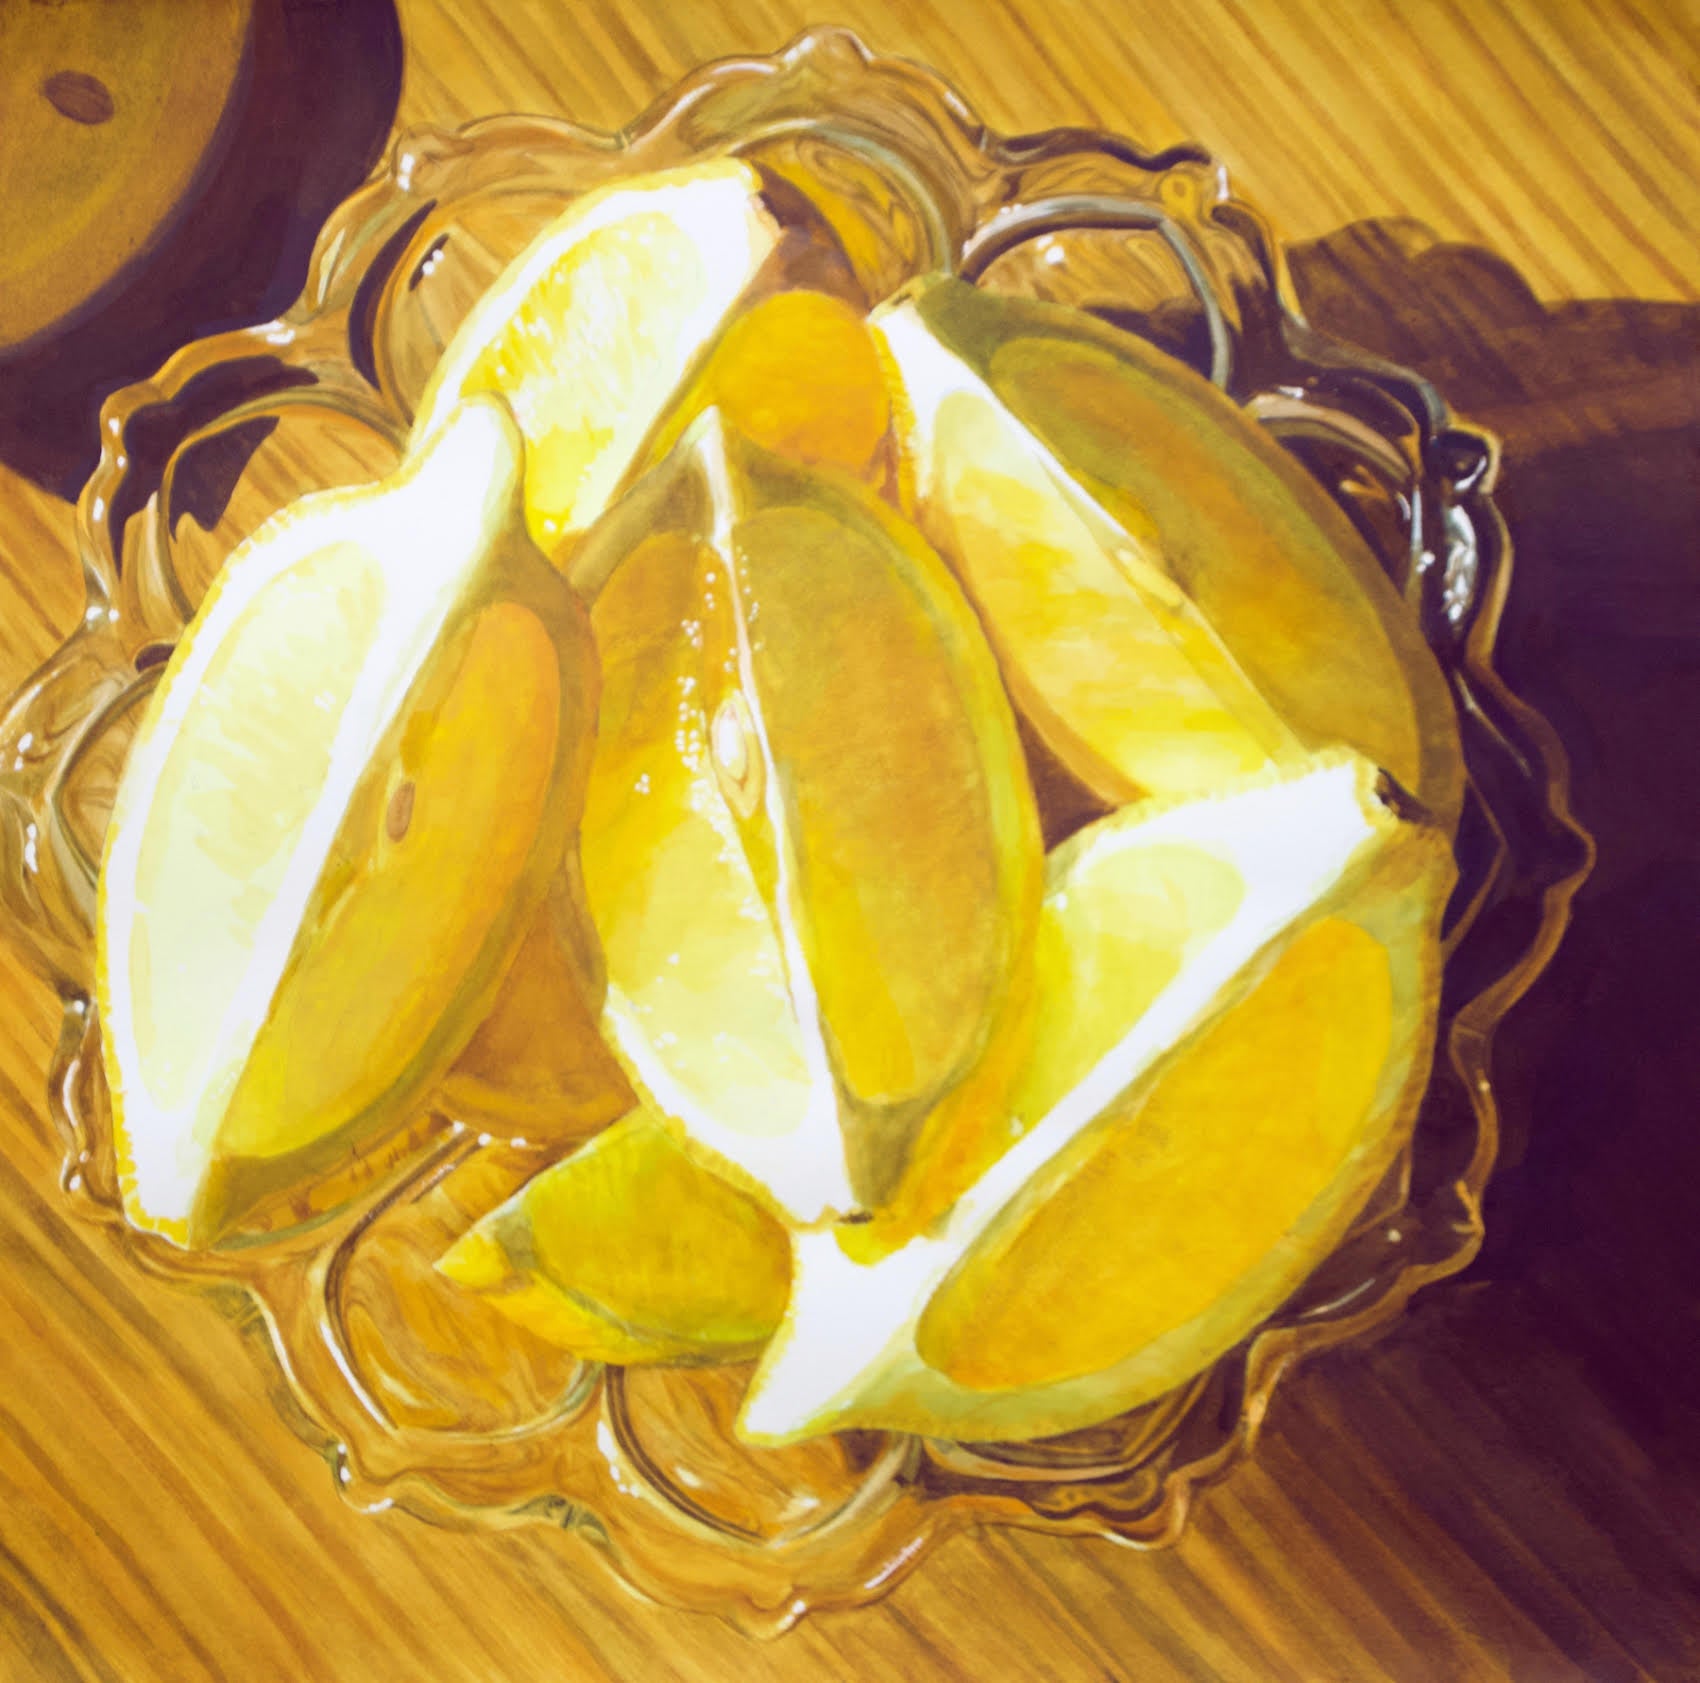 Lemon Wedges